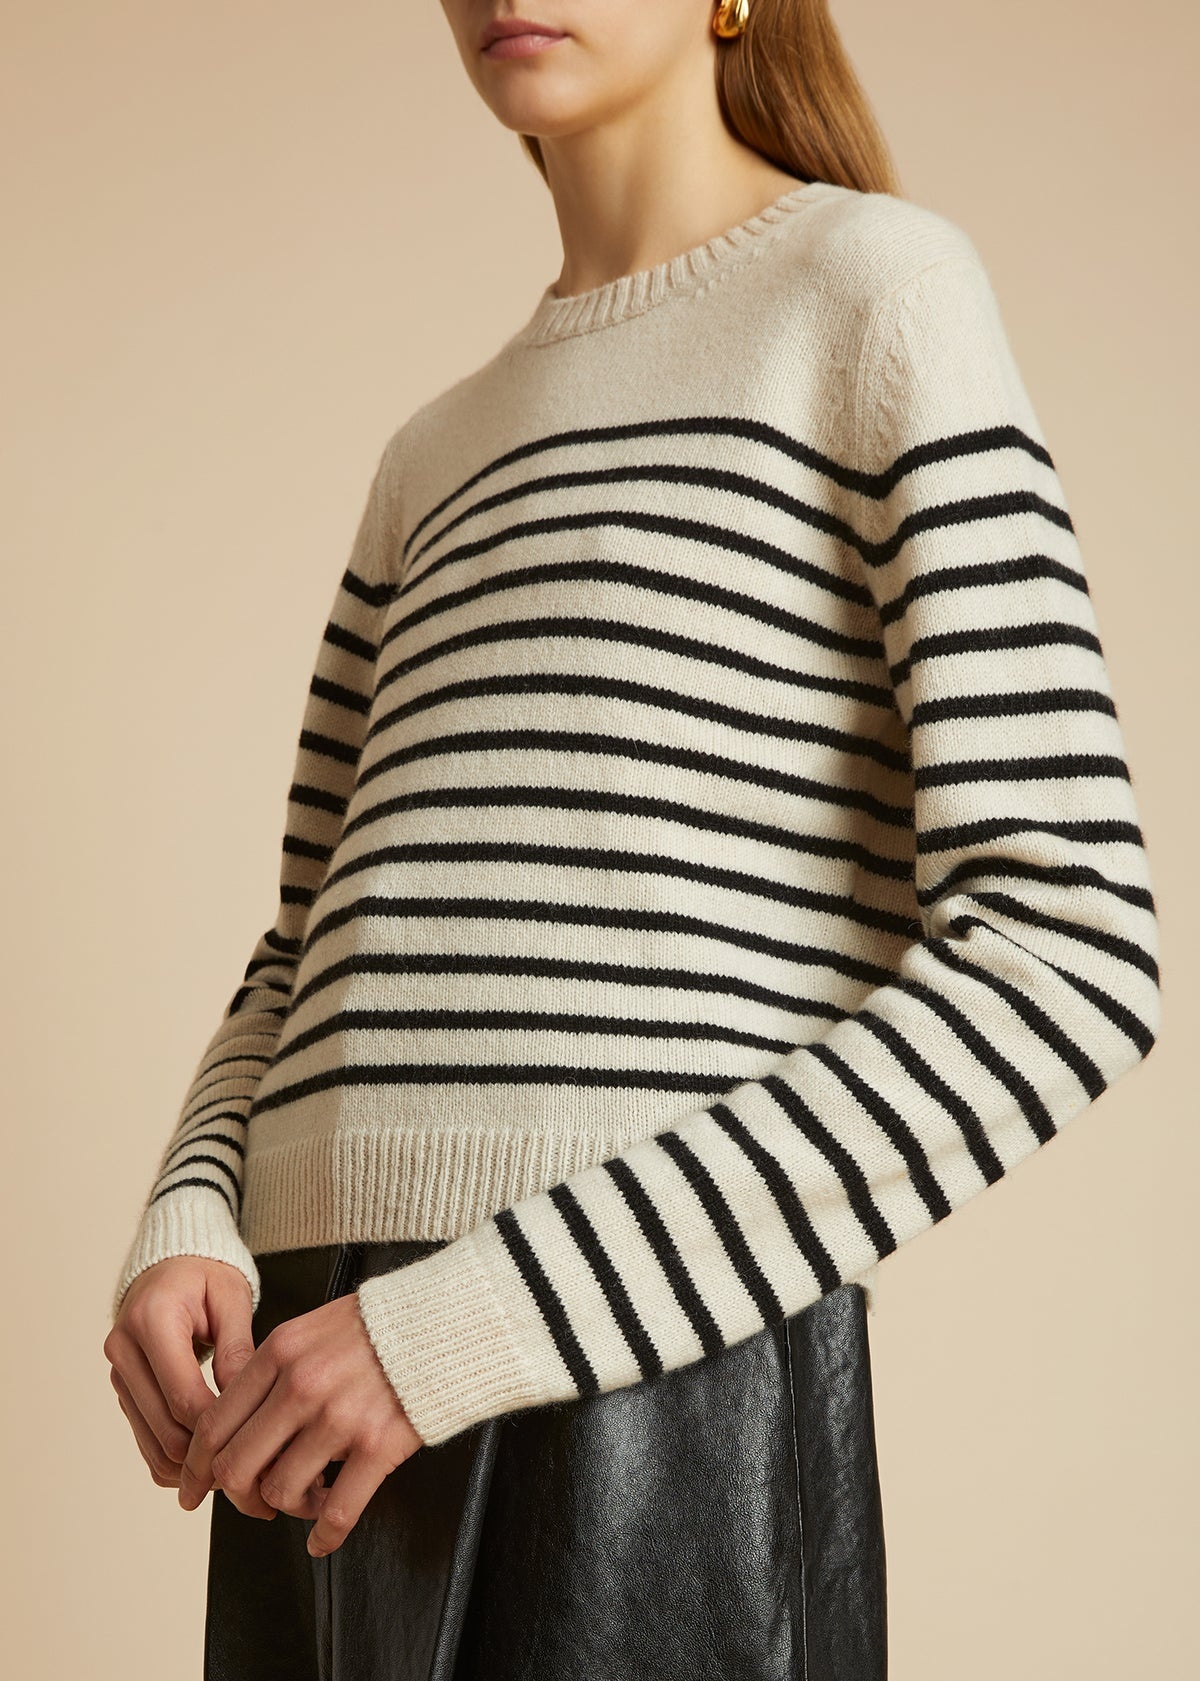 The Diletta Sweater in Magnolia and Black Stripe - 3